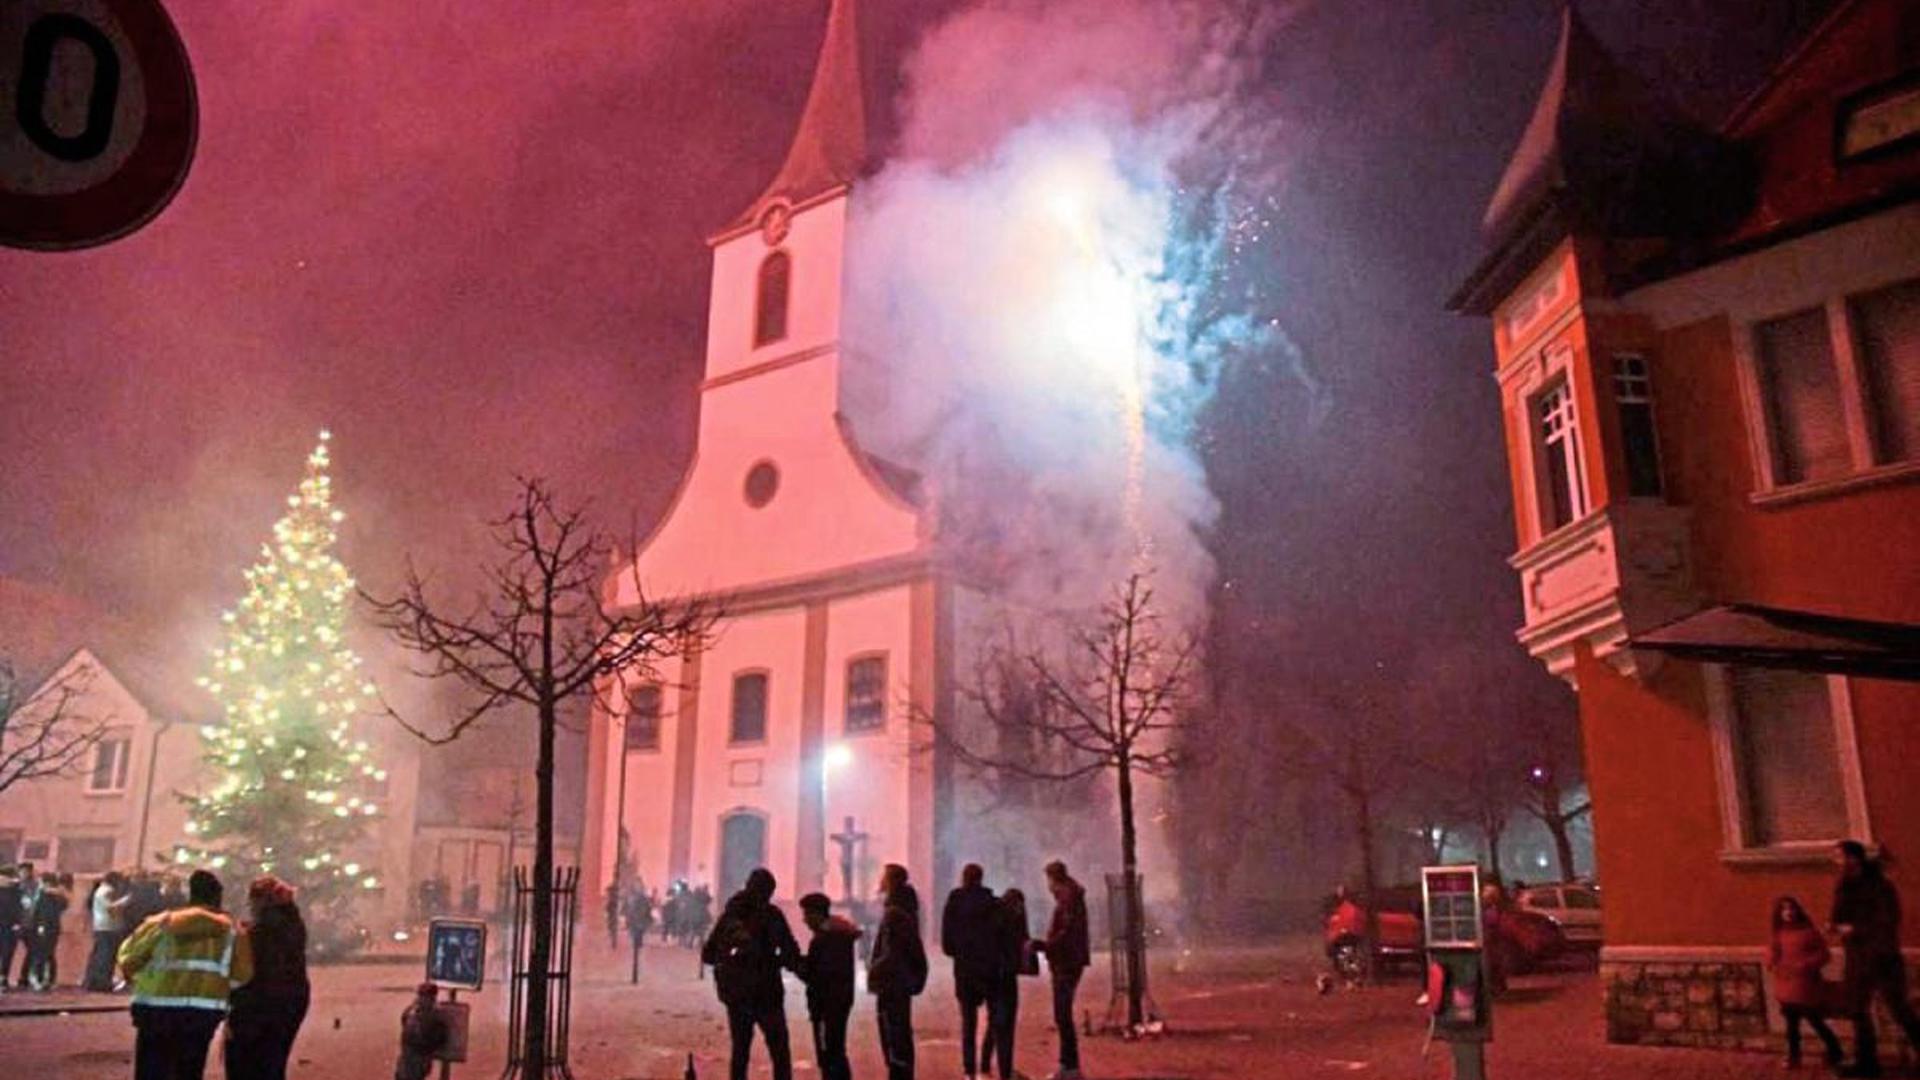 Ein Feuerwerk, wie dieses in Walzbachtal-Jöhlingen, in der Nähe einer Kirche zu entzünden, wäre in Bretten heute schon verboten. Für ein generelles Verbot in Bretten läuft eine Petition im Internet. Auch die Feinstaubentwicklung ist hier gut sichtbar.